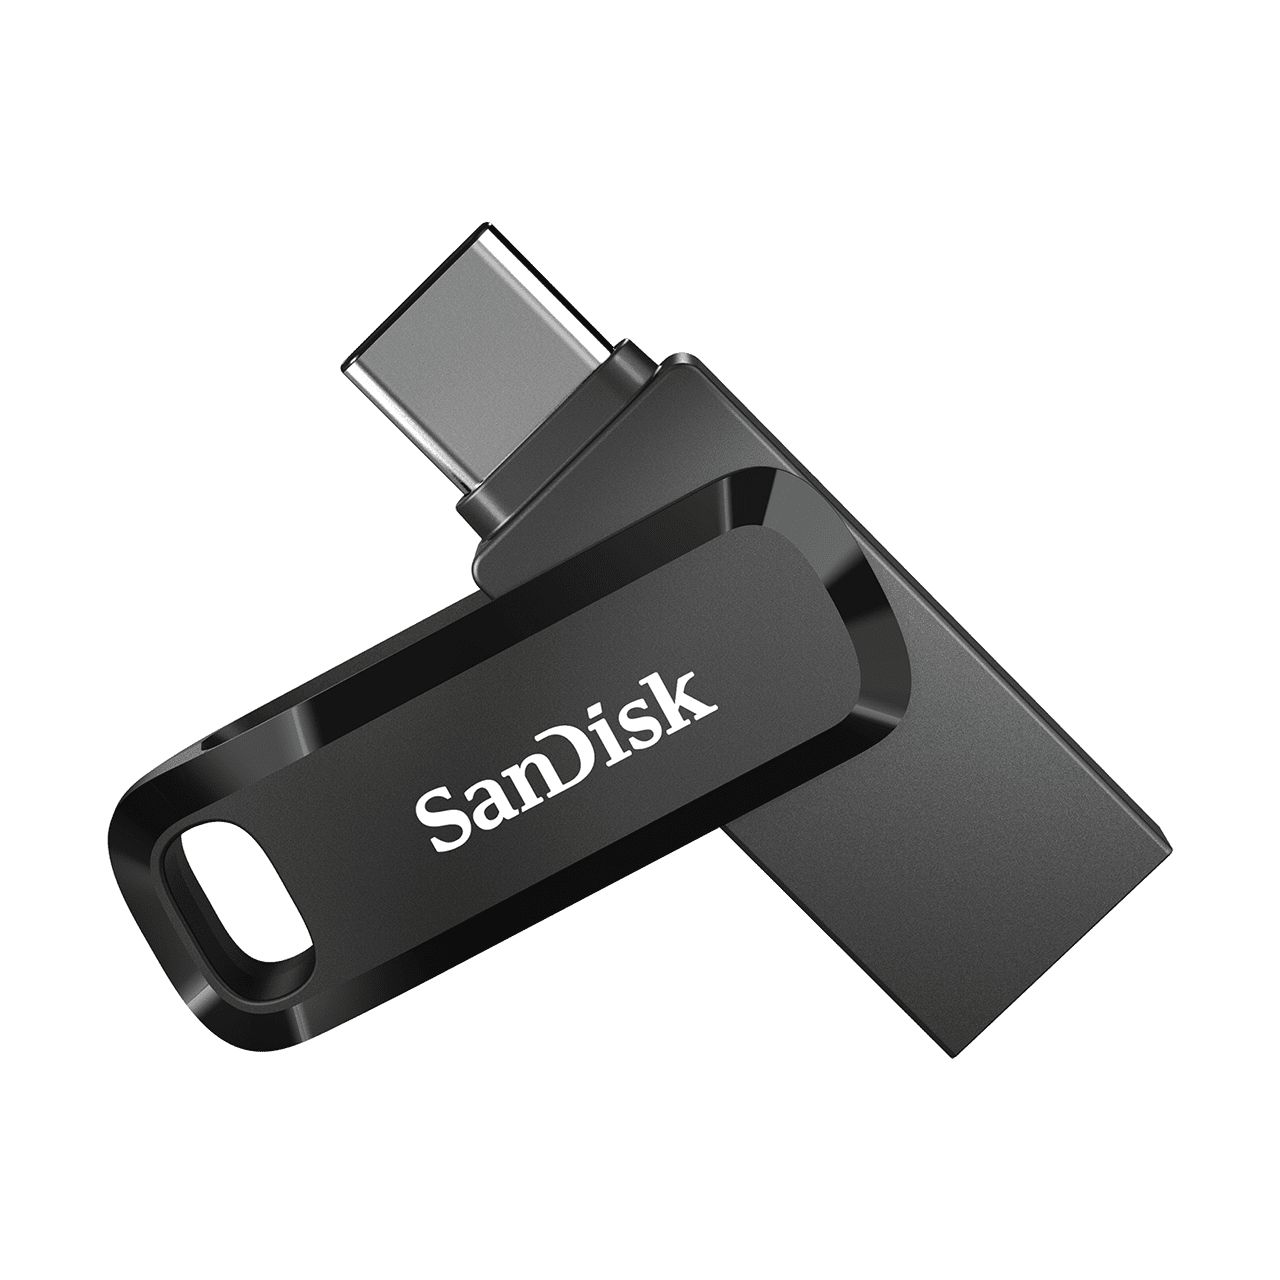 SDDDC3-064G-G46 - Pendrive SANDISK Dual 64Gb USB-A/C 3.0 Lectura 150 Mb/s Llavero Negro (SDDDC3-064G-G46)